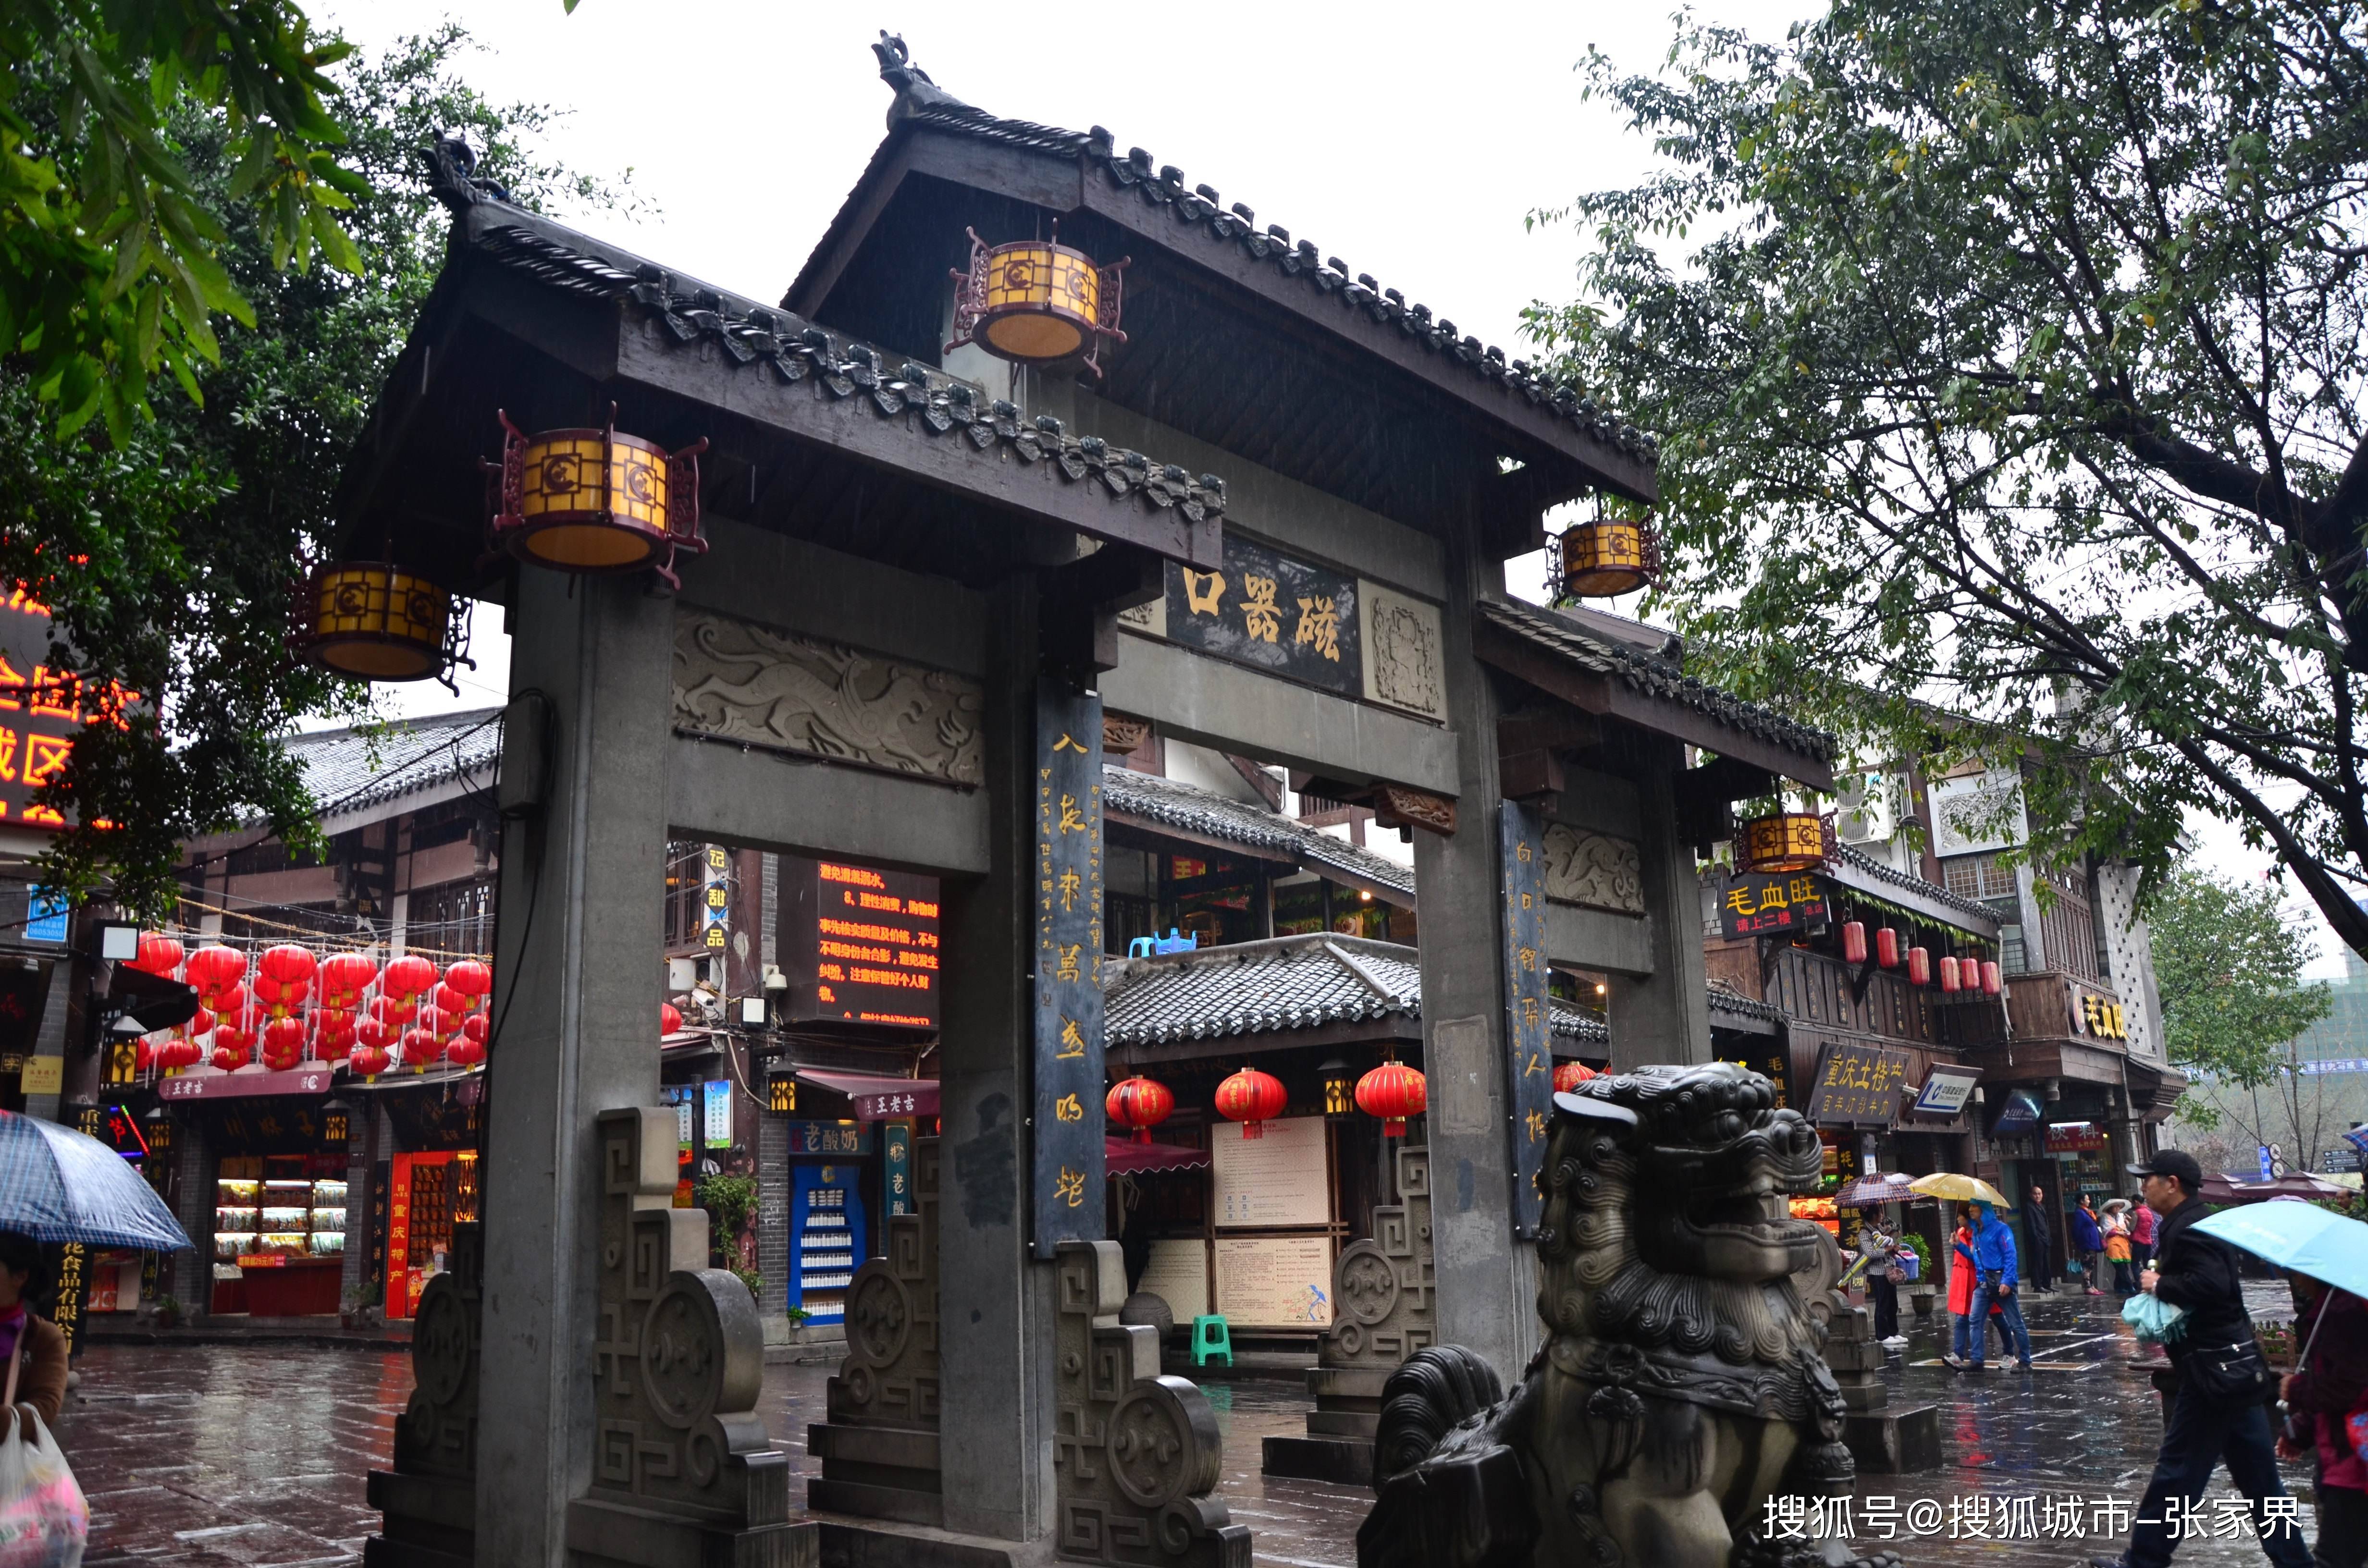 重庆市内旅游必去景点图片